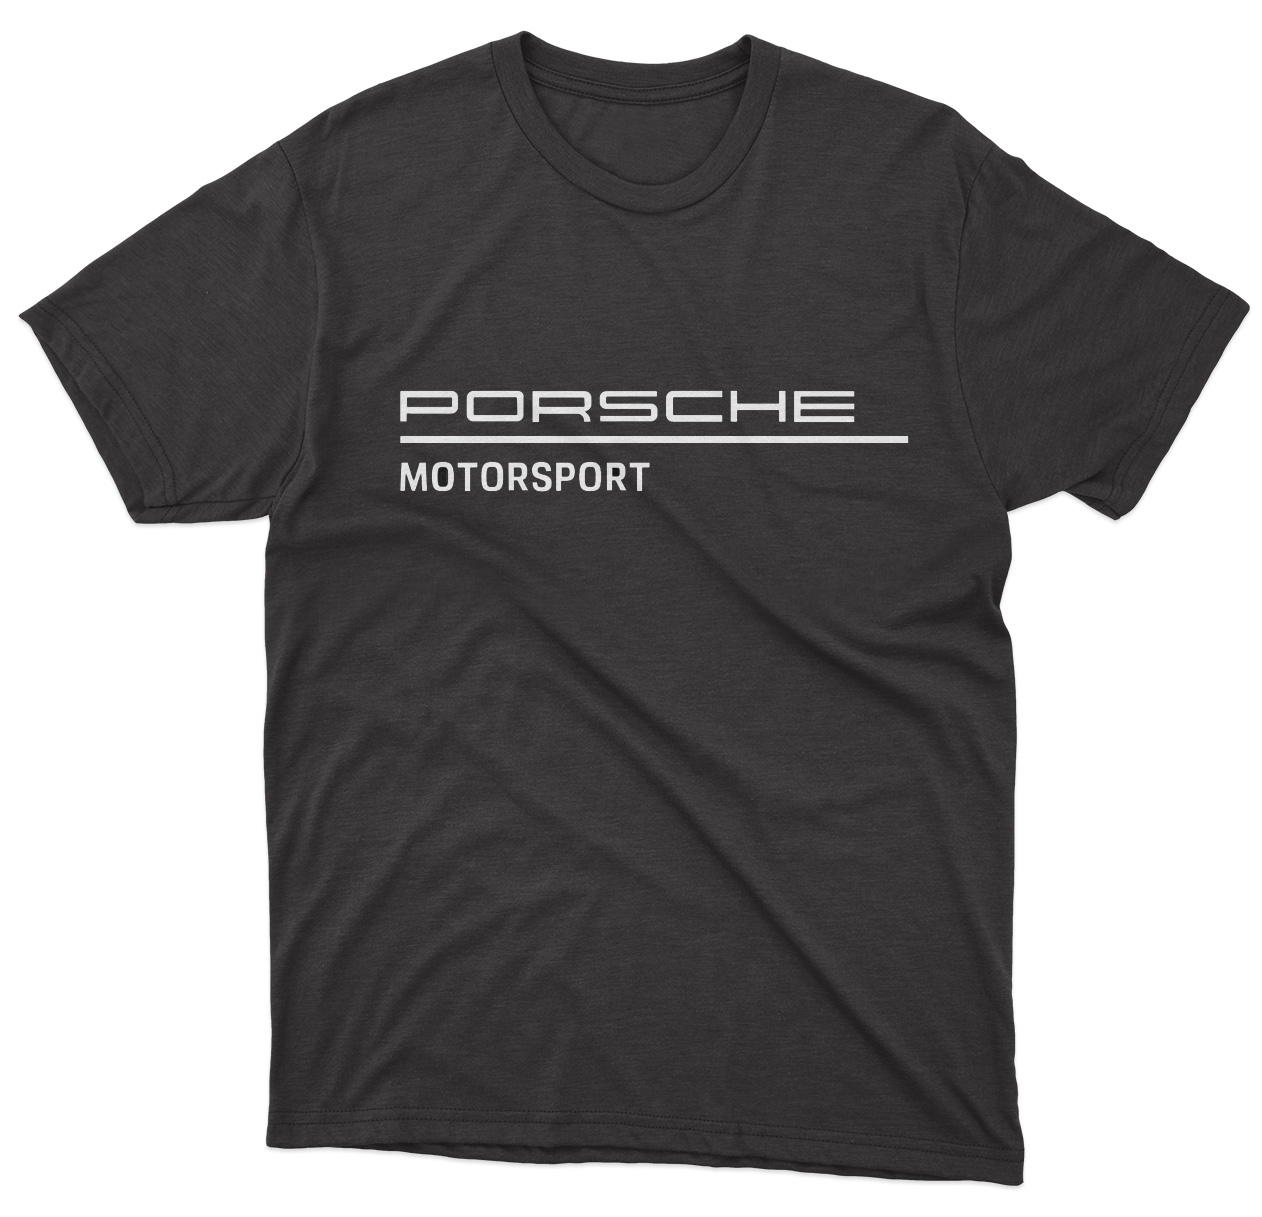 Porsche Motorsport Black T-Shirt - Unisex - 100% Cotton - S | M | L ...